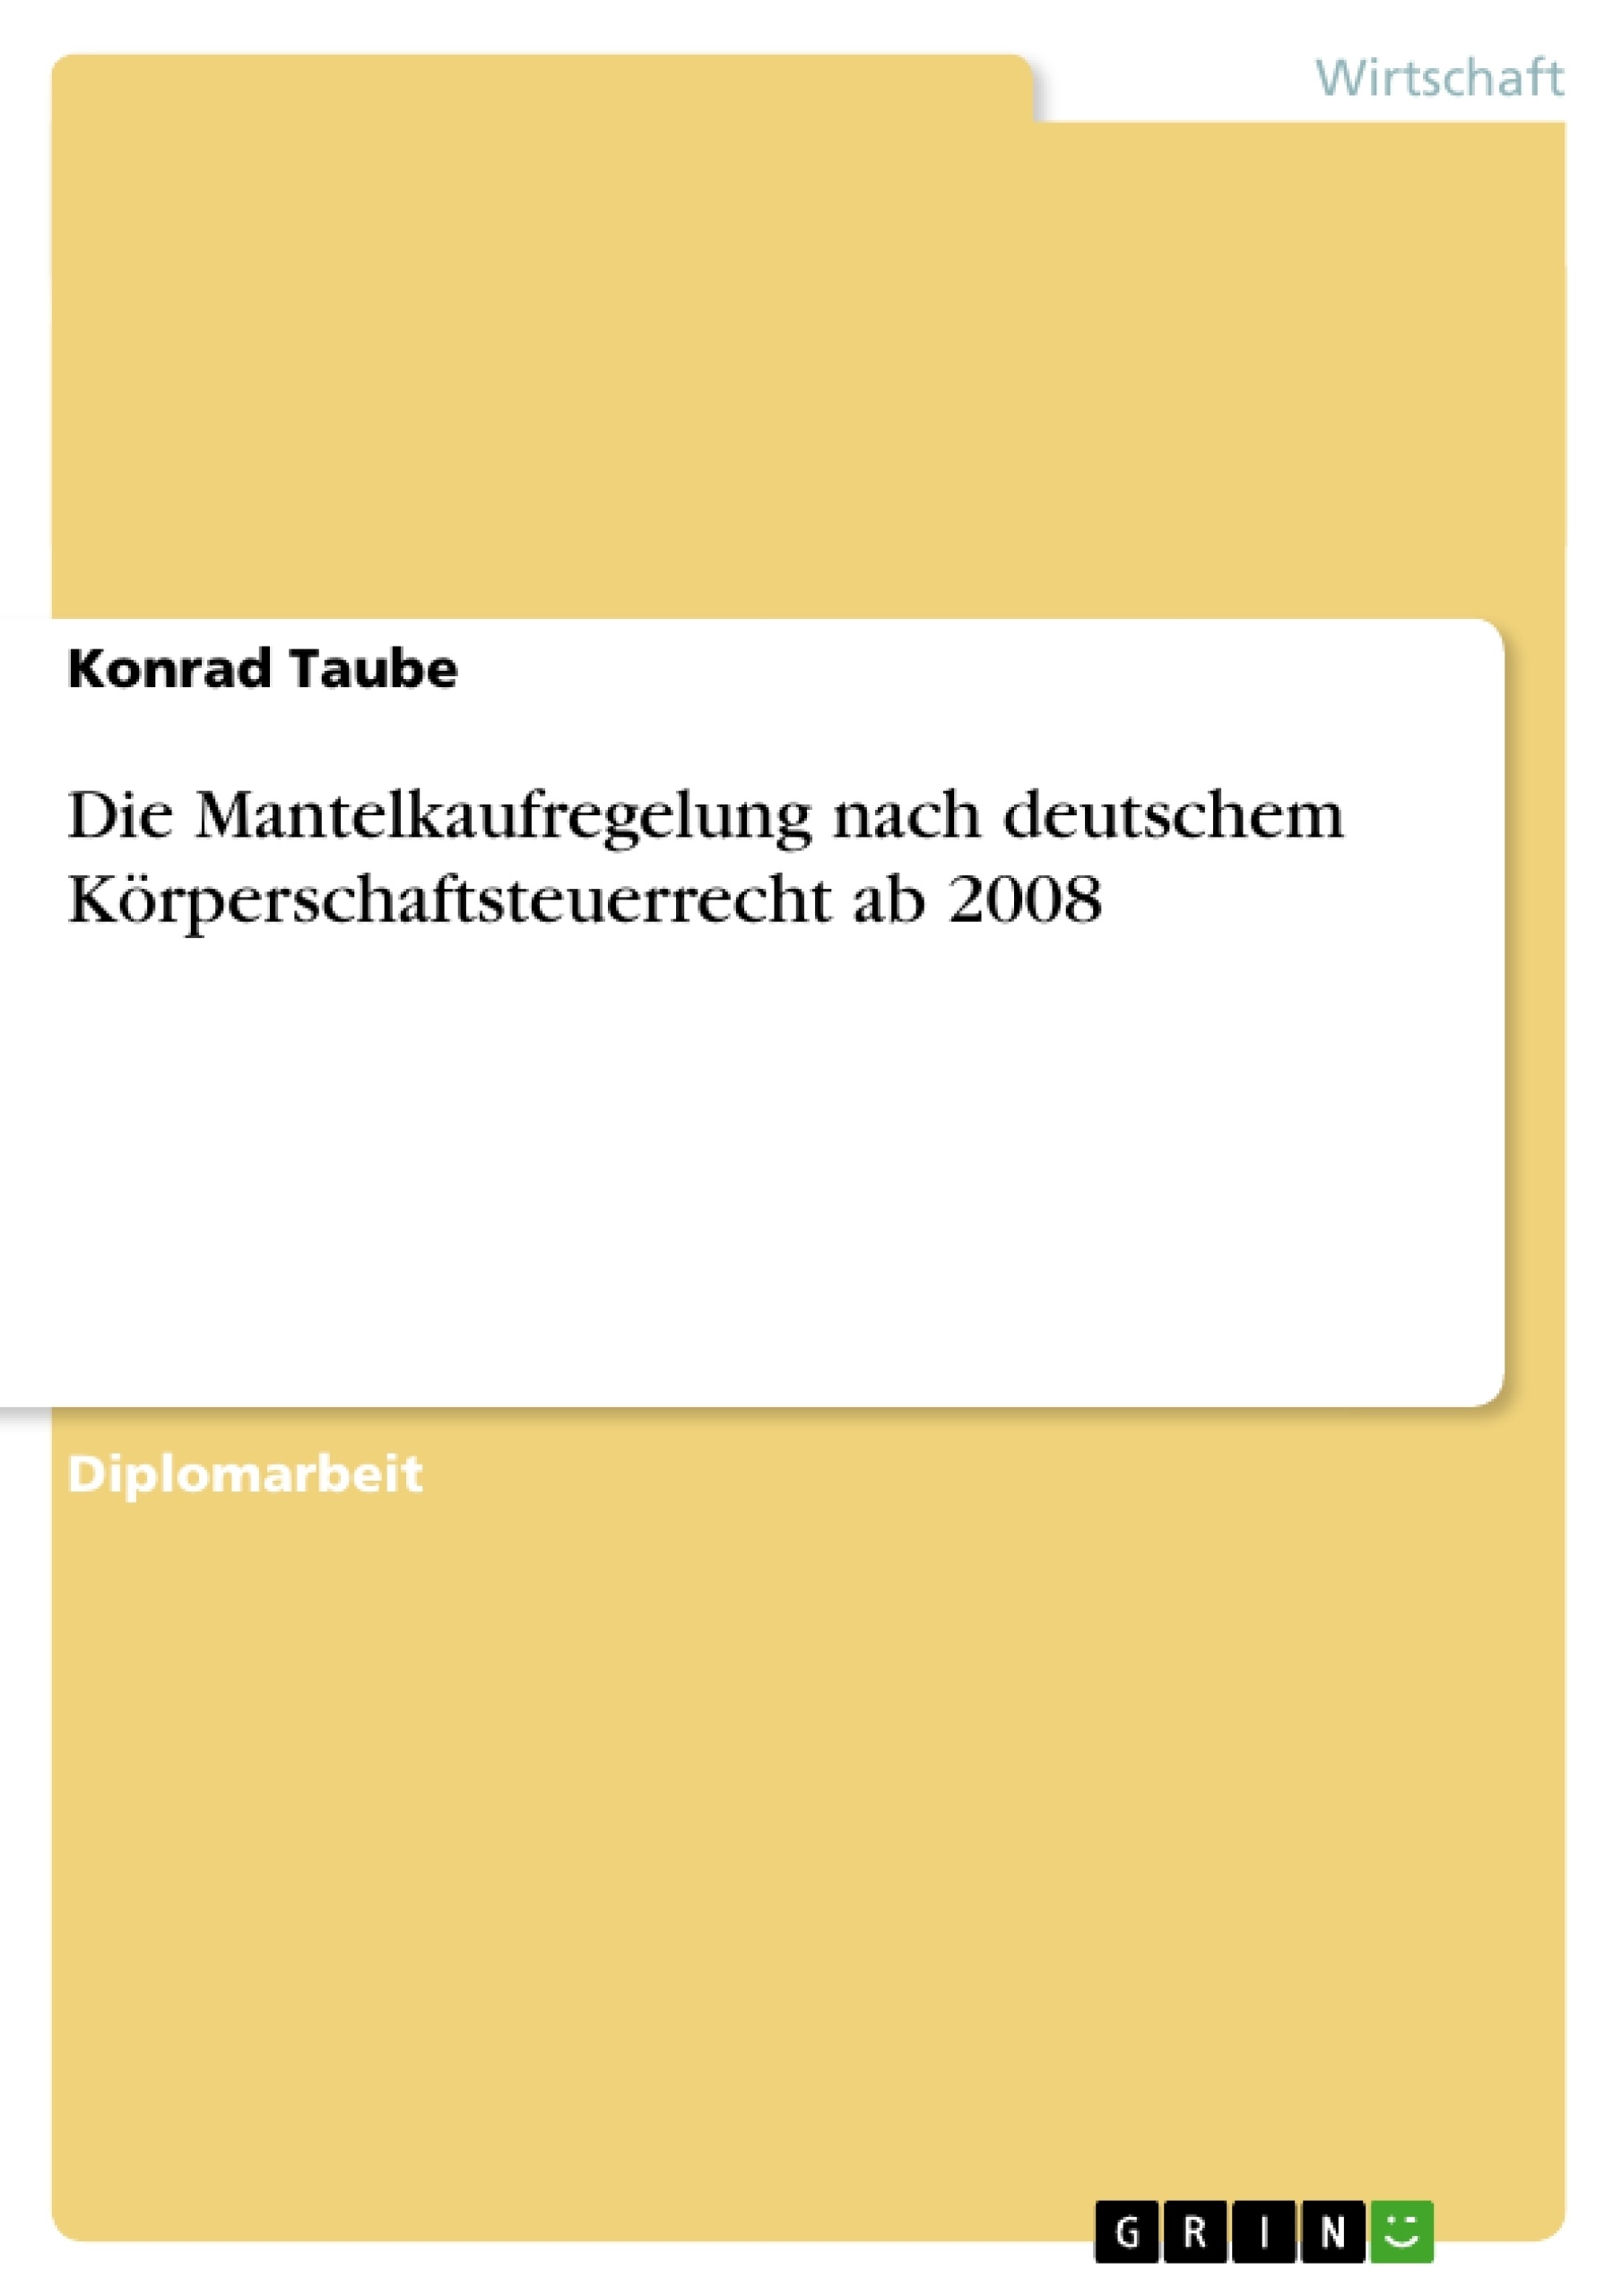 Titre: Die Mantelkaufregelung nach deutschem Körperschaftsteuerrecht ab 2008